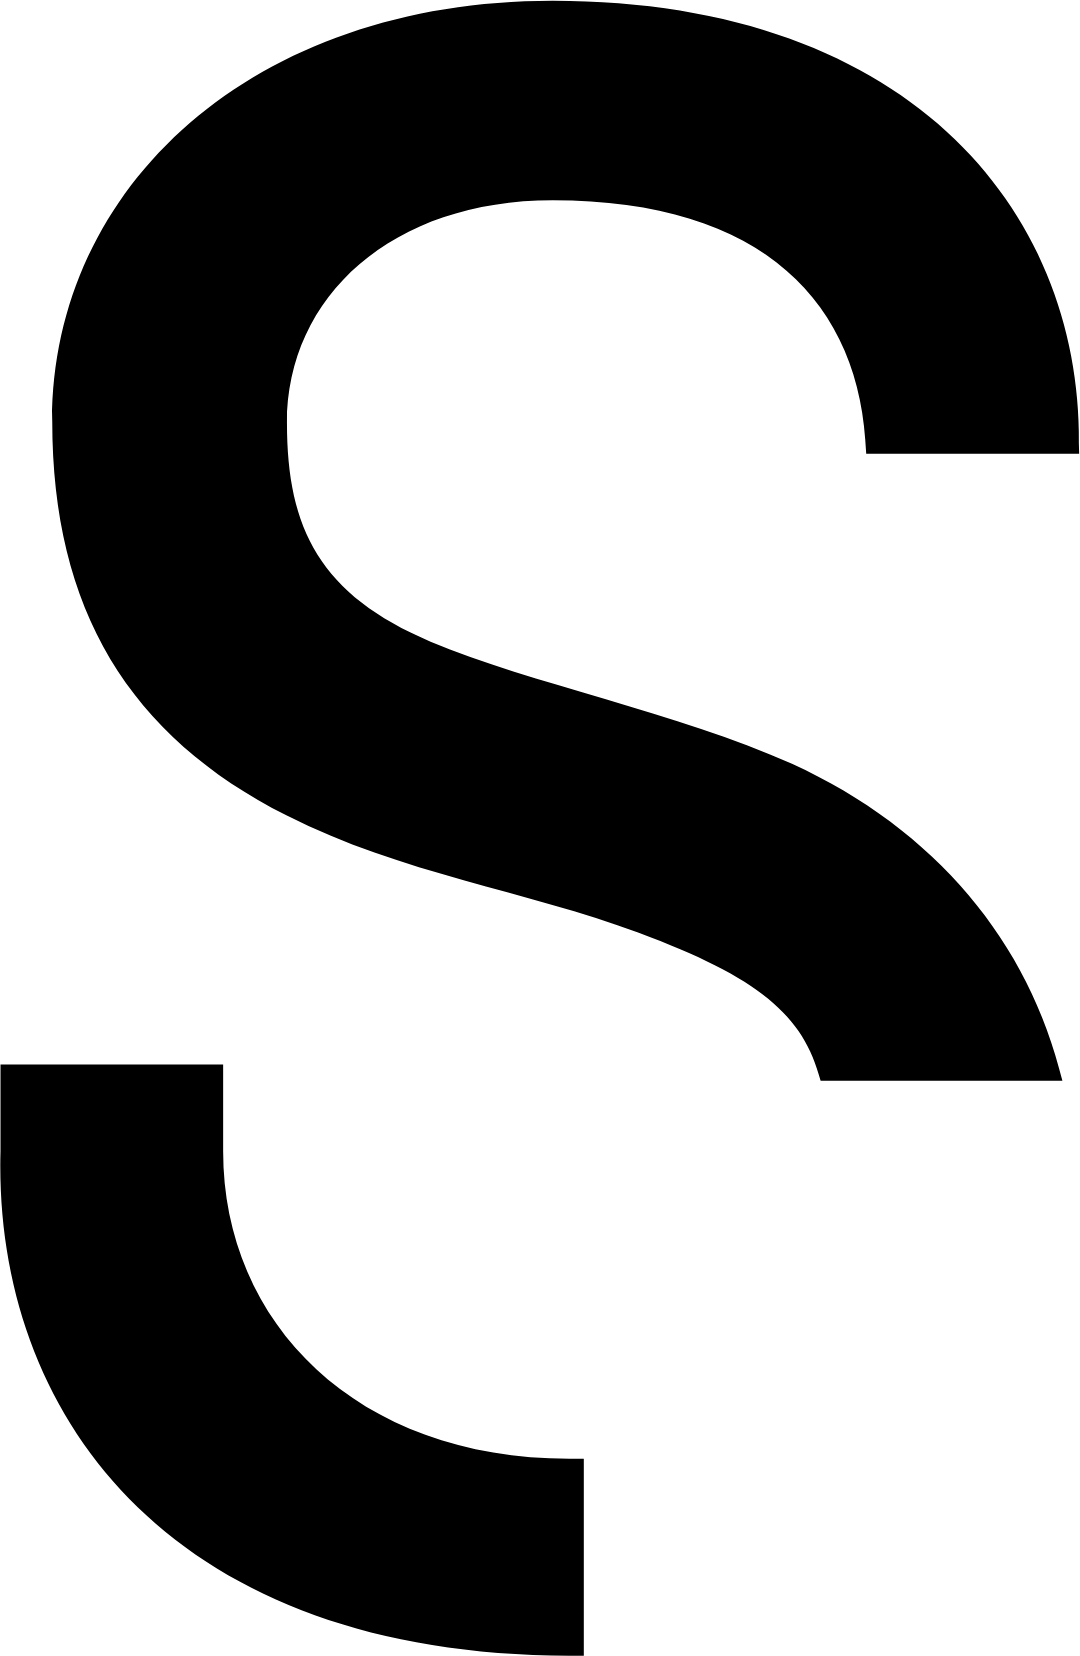 Sartorius logo (transparent PNG)